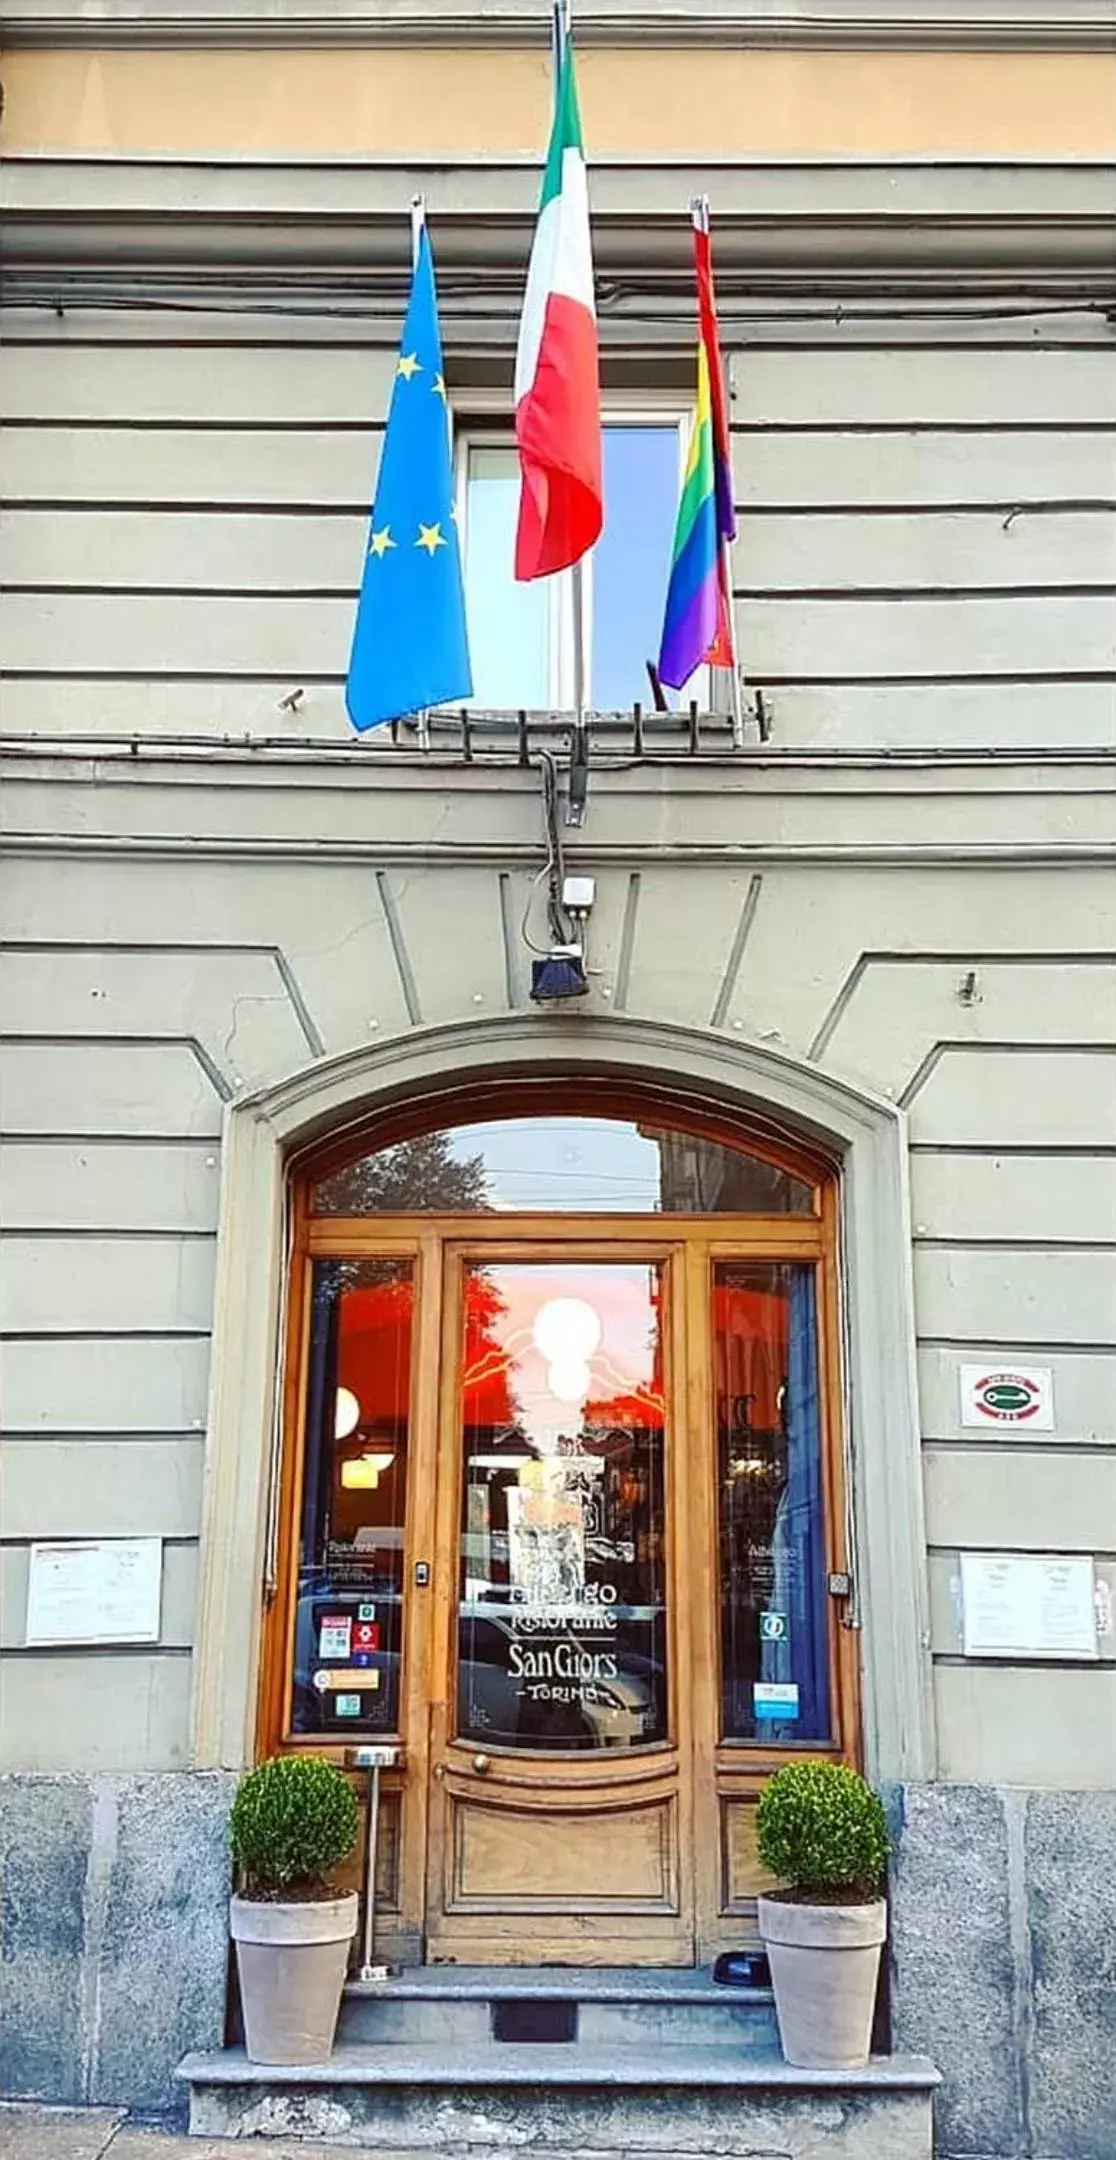 Facade/entrance in Albergo Ristorante San Giors